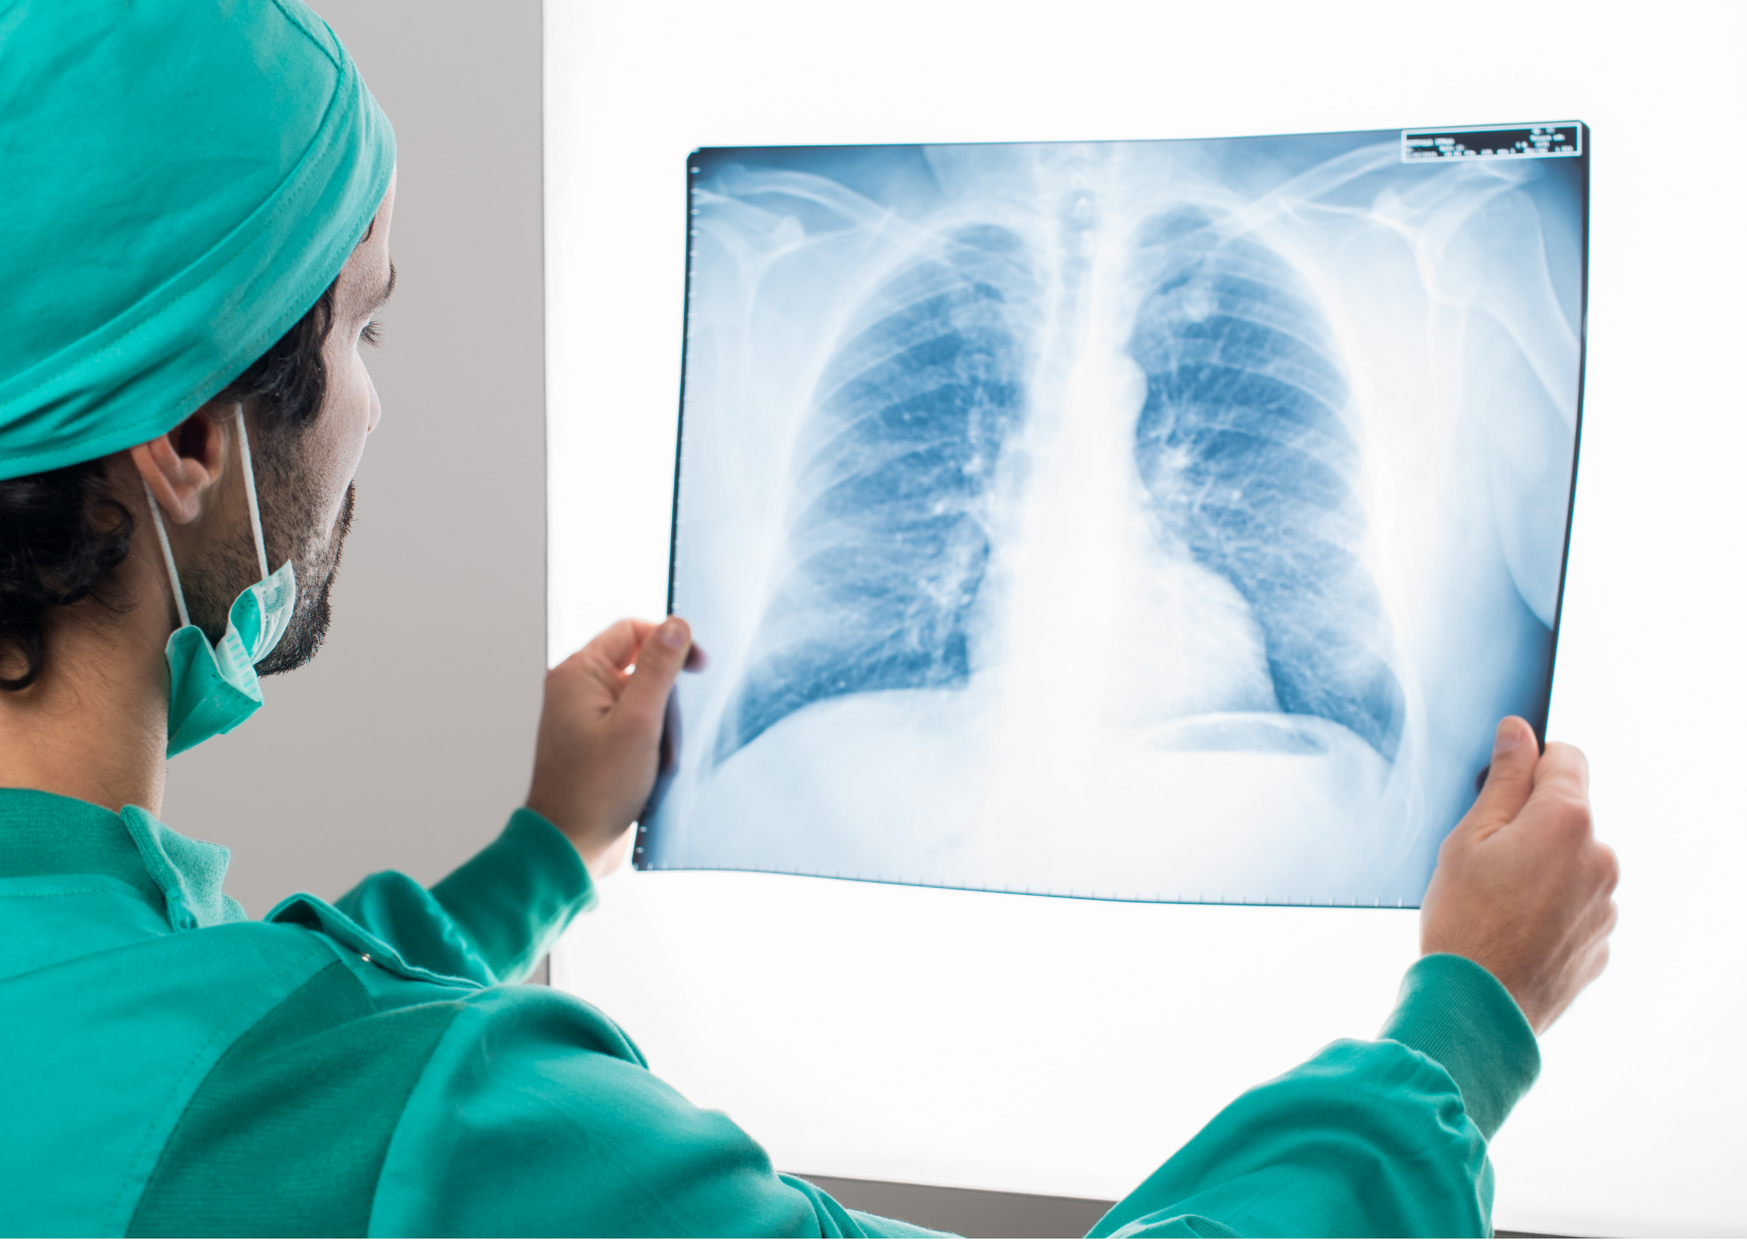 Claves para el diagnóstico temprano de cáncer de pulmón en el marco del COVID-19